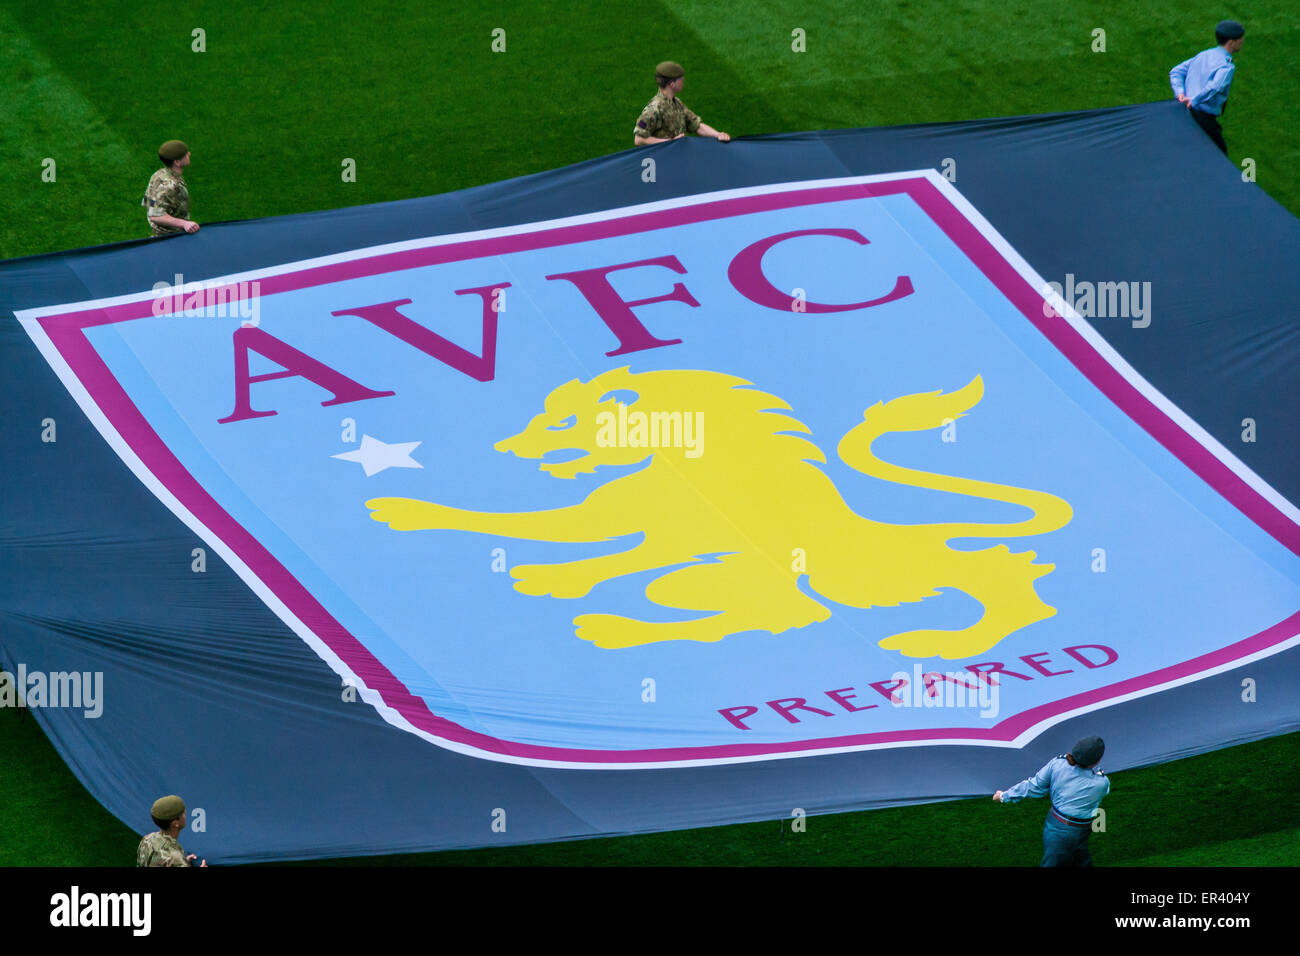 Aston Villa banner Stock Photo